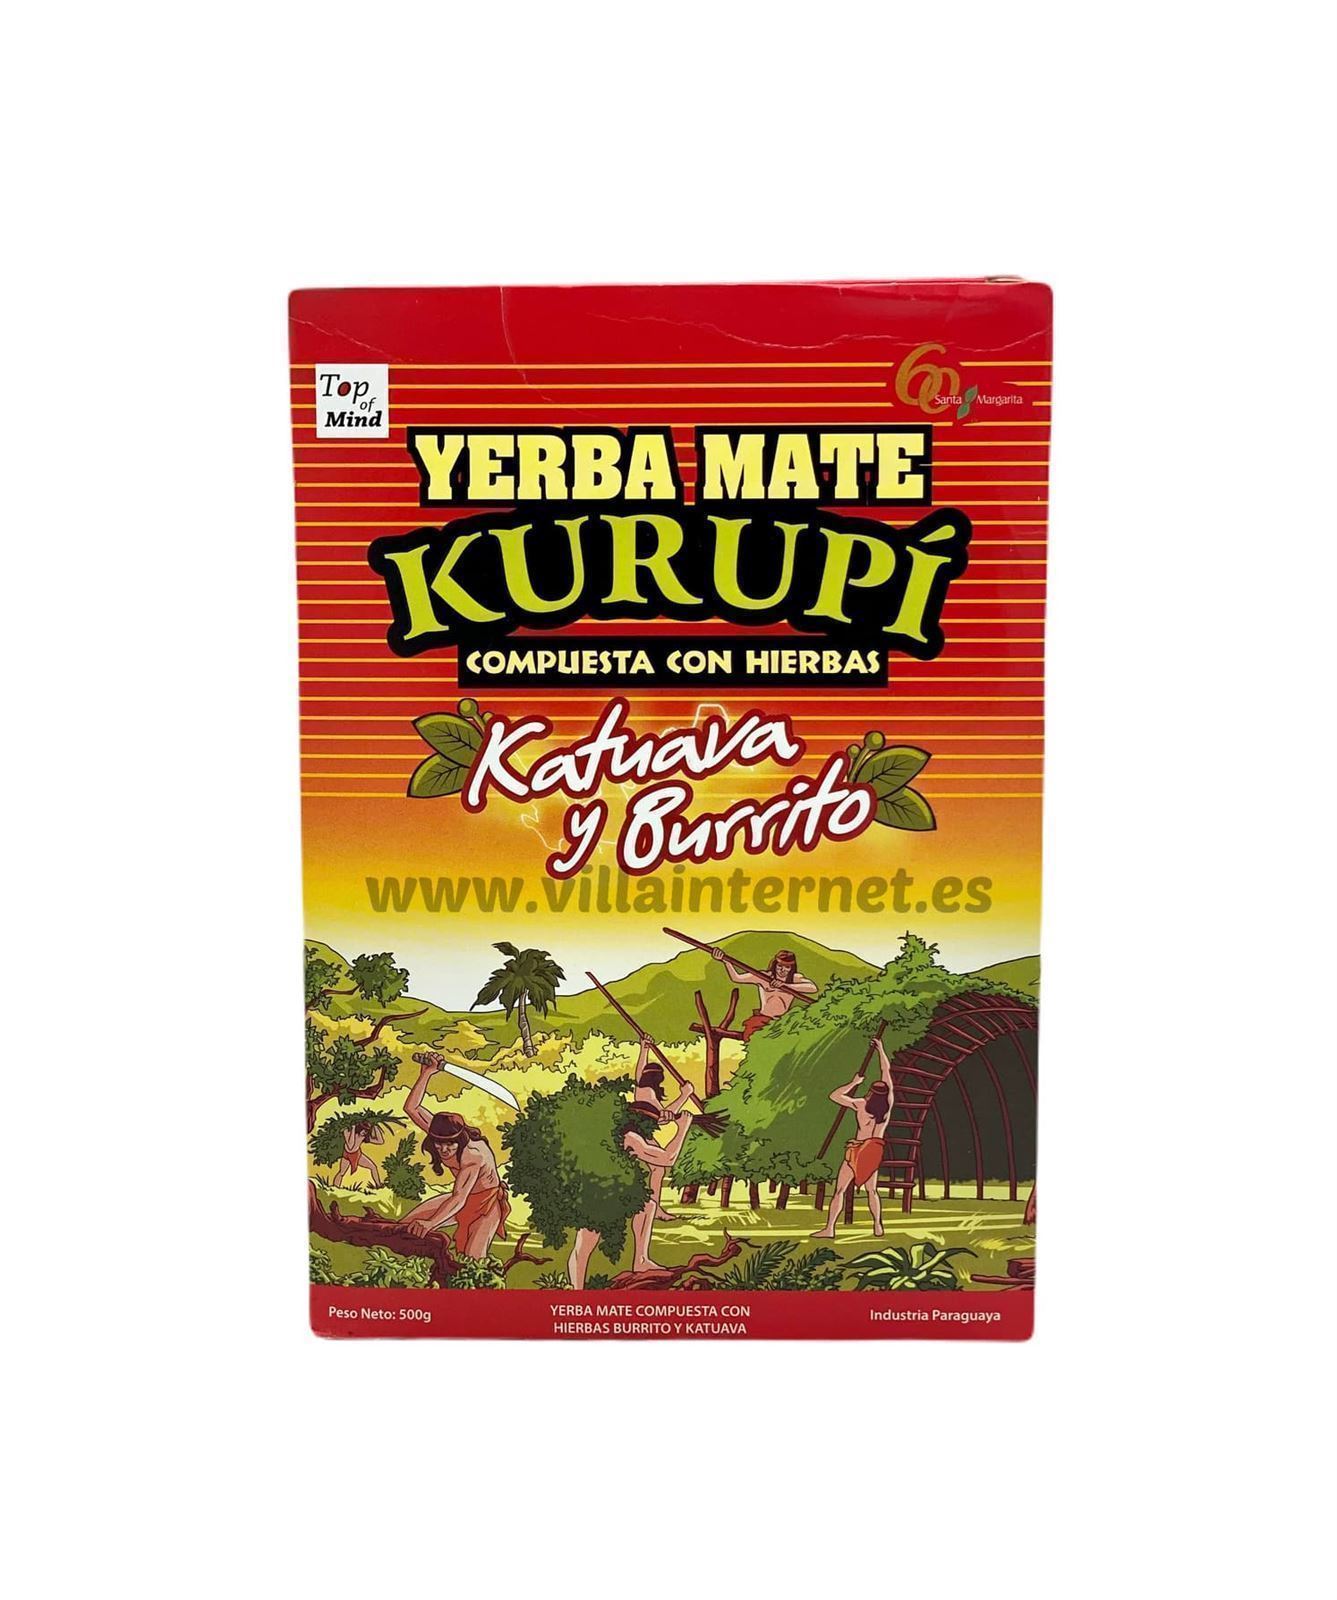 Yerba mate compuesta con hierbas katuava y burrito 500g - Imagen 1